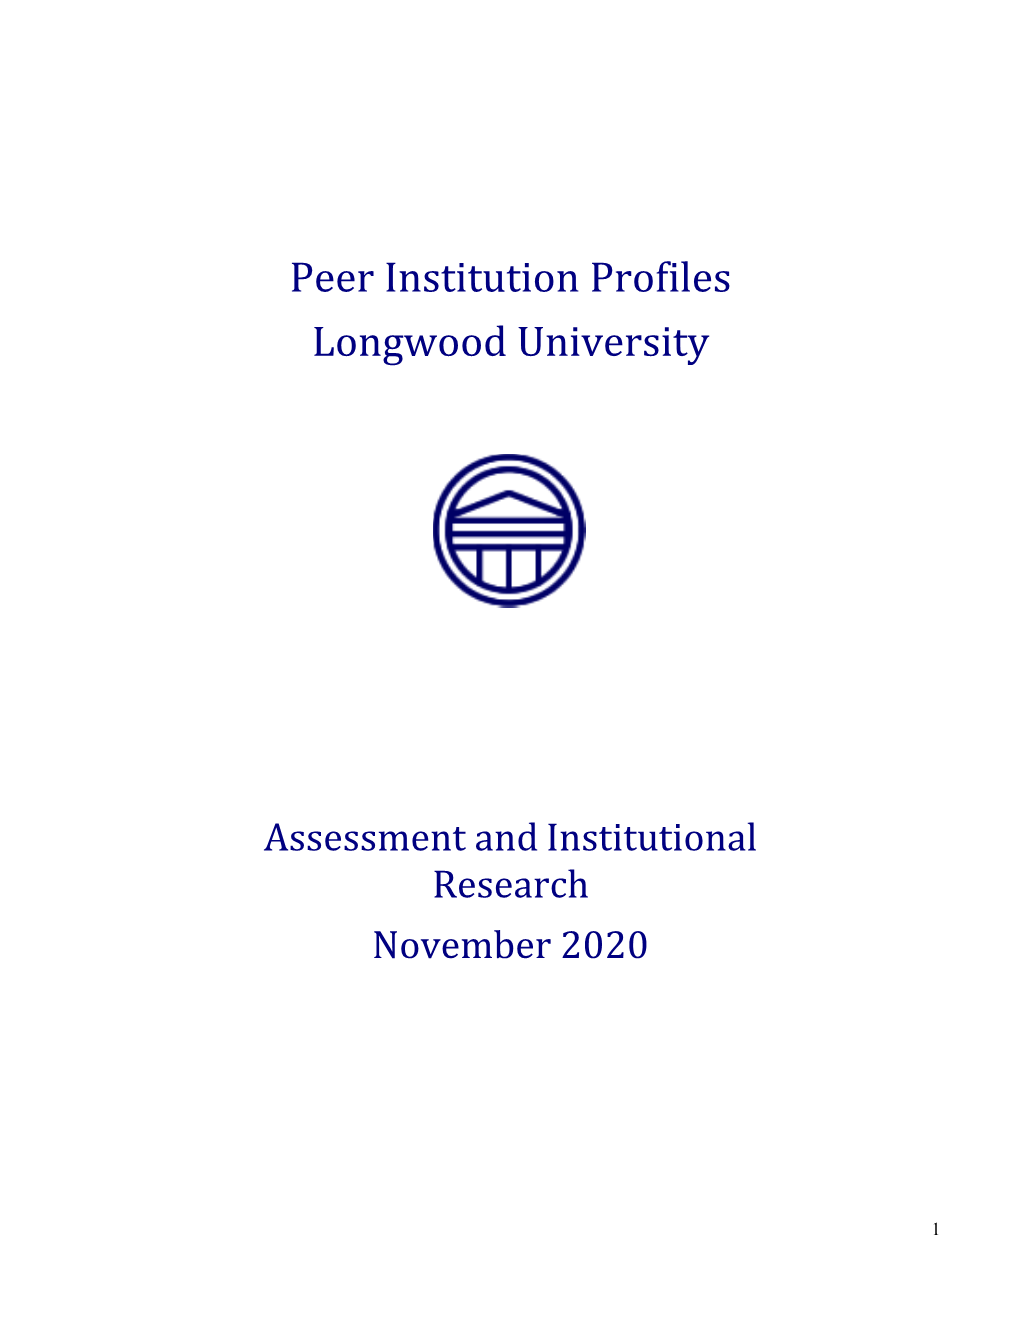 2020 Peer Institution Profiles